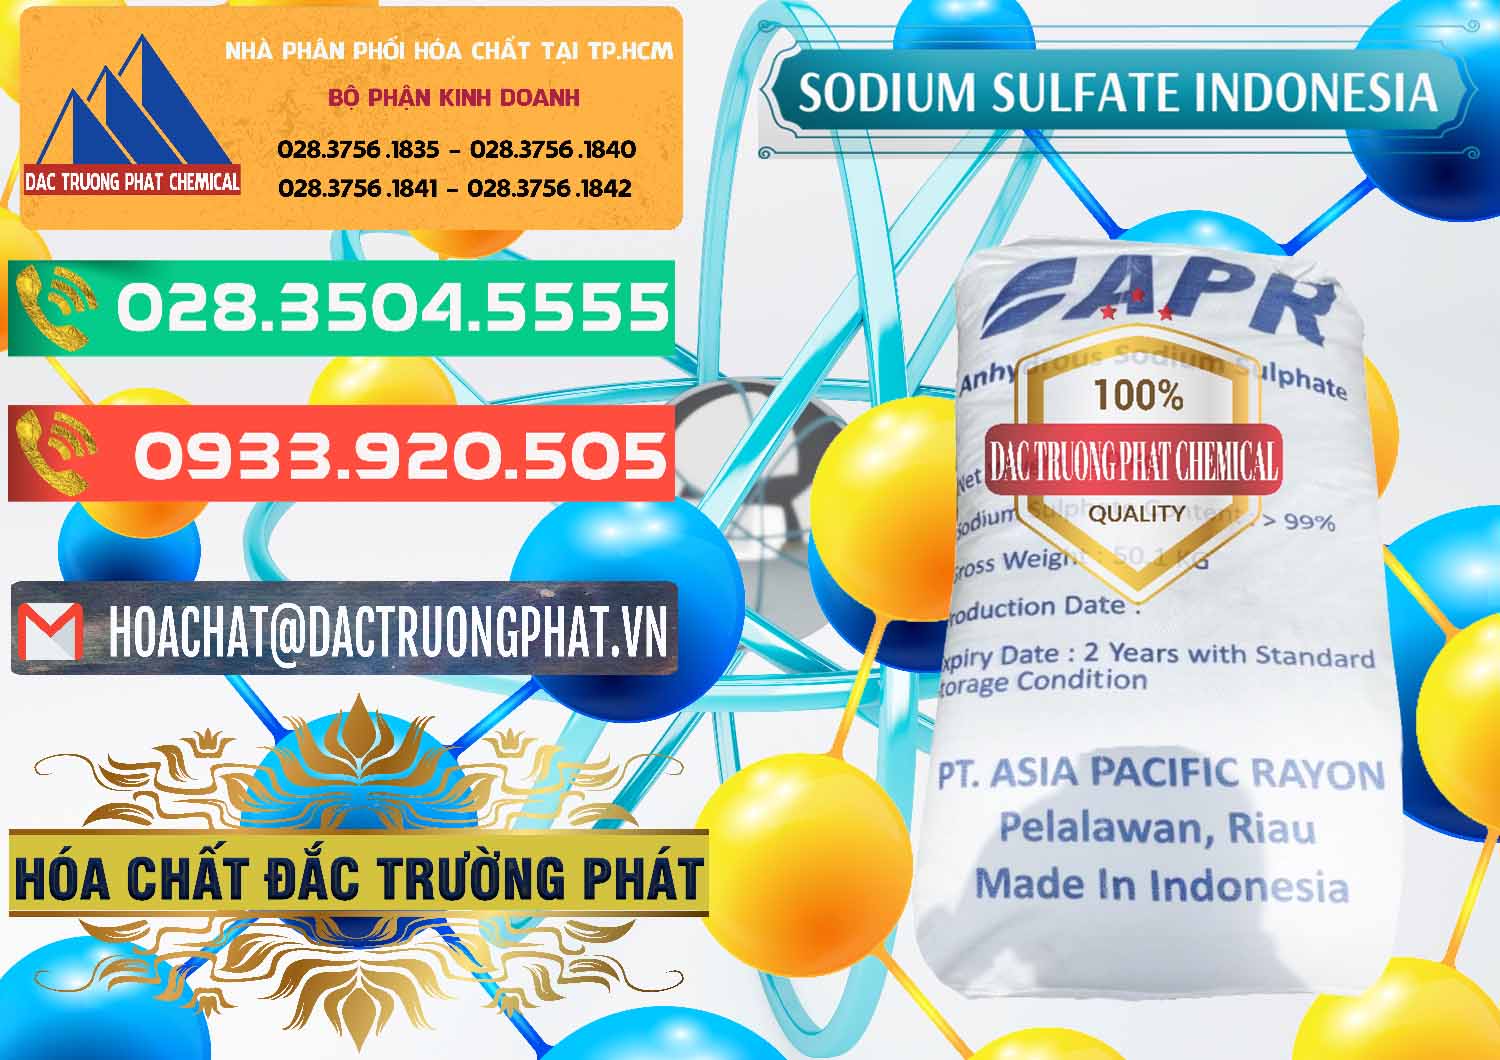 Chuyên cung ứng - bán Sodium Sulphate - Muối Sunfat Na2SO4 APR Indonesia - 0460 - Đơn vị chuyên kinh doanh & cung cấp hóa chất tại TP.HCM - congtyhoachat.com.vn